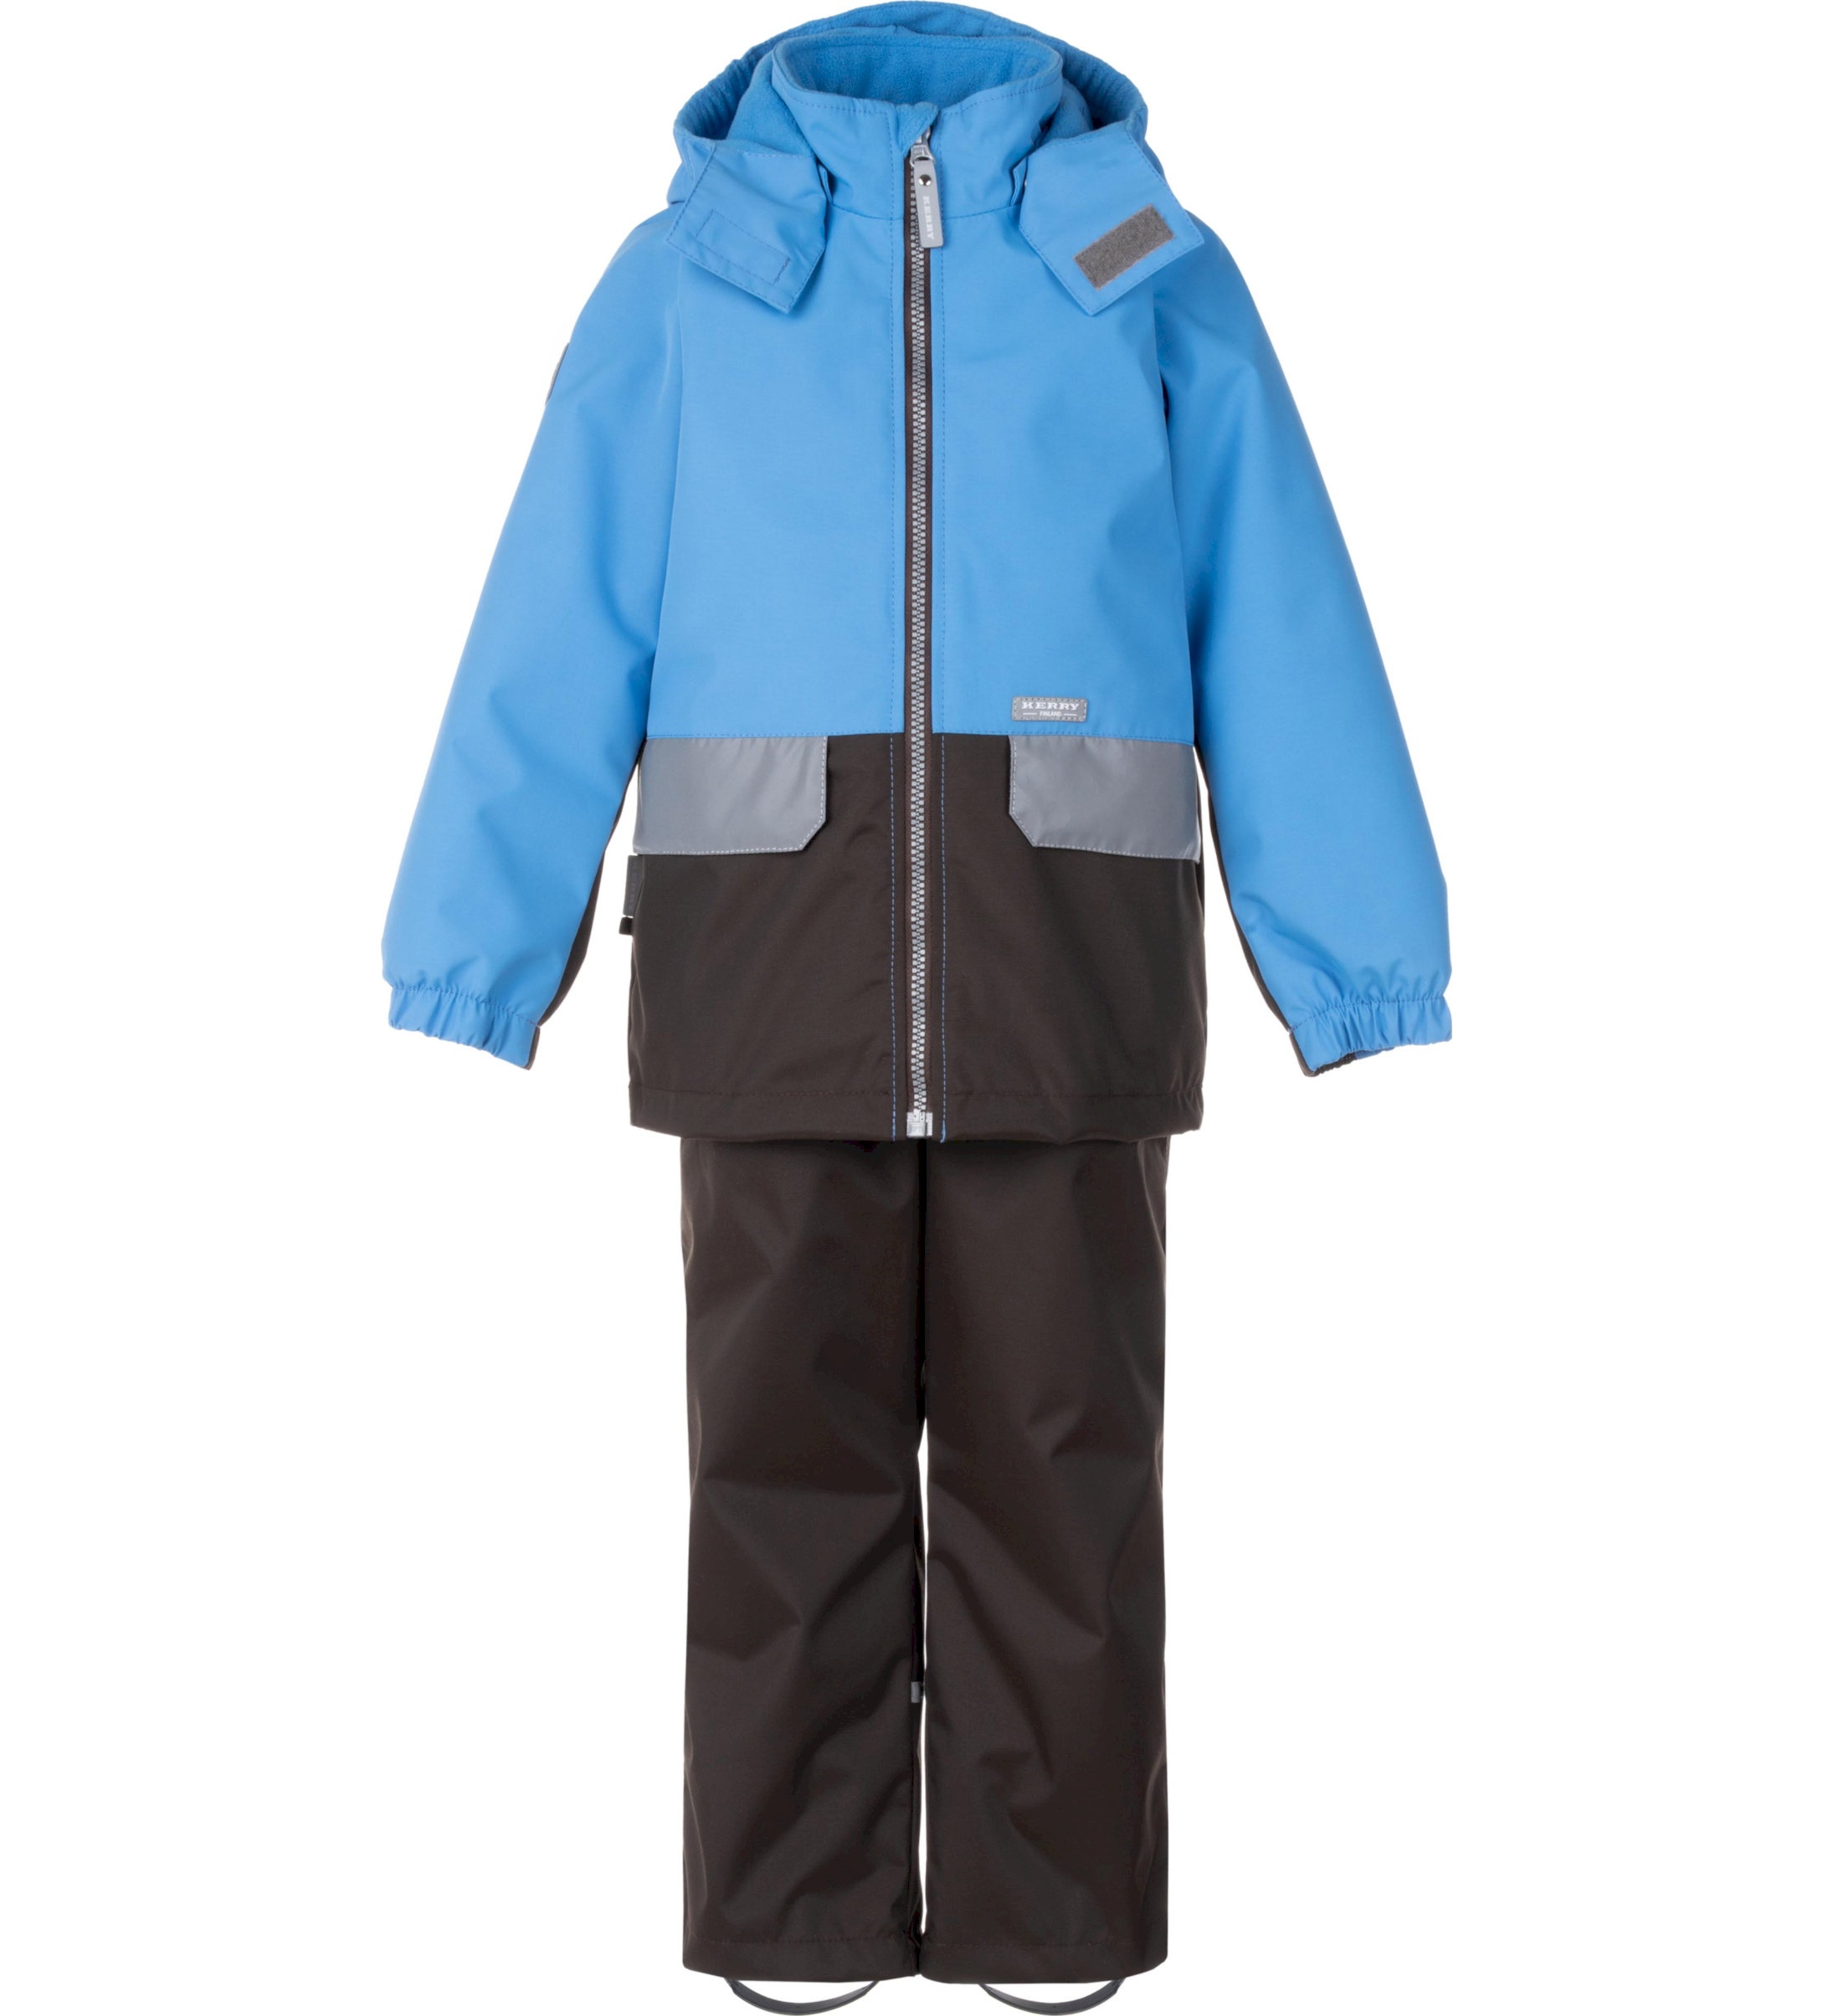 Комплект верхней одежды детский KERRY K24020, голубой; серый, 122